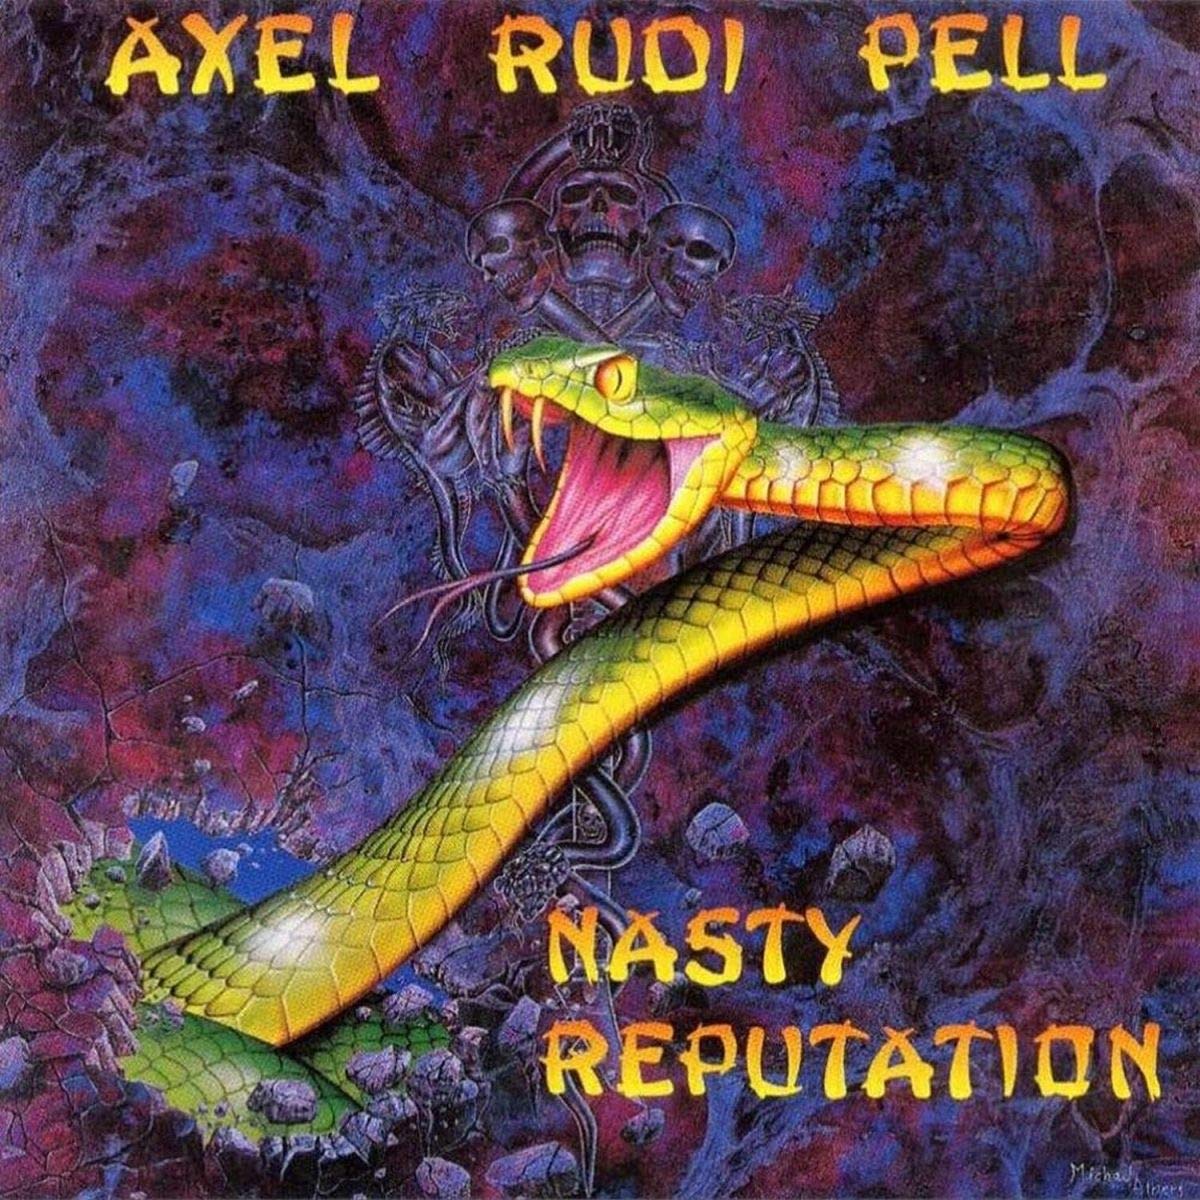 01 de mayo de 1991. Se publica el álbum llamado 'Nasty Reputation', es el segundo disco de estudio del guitarrista aleman Axel Rudi Pell. #AxelRudiPell